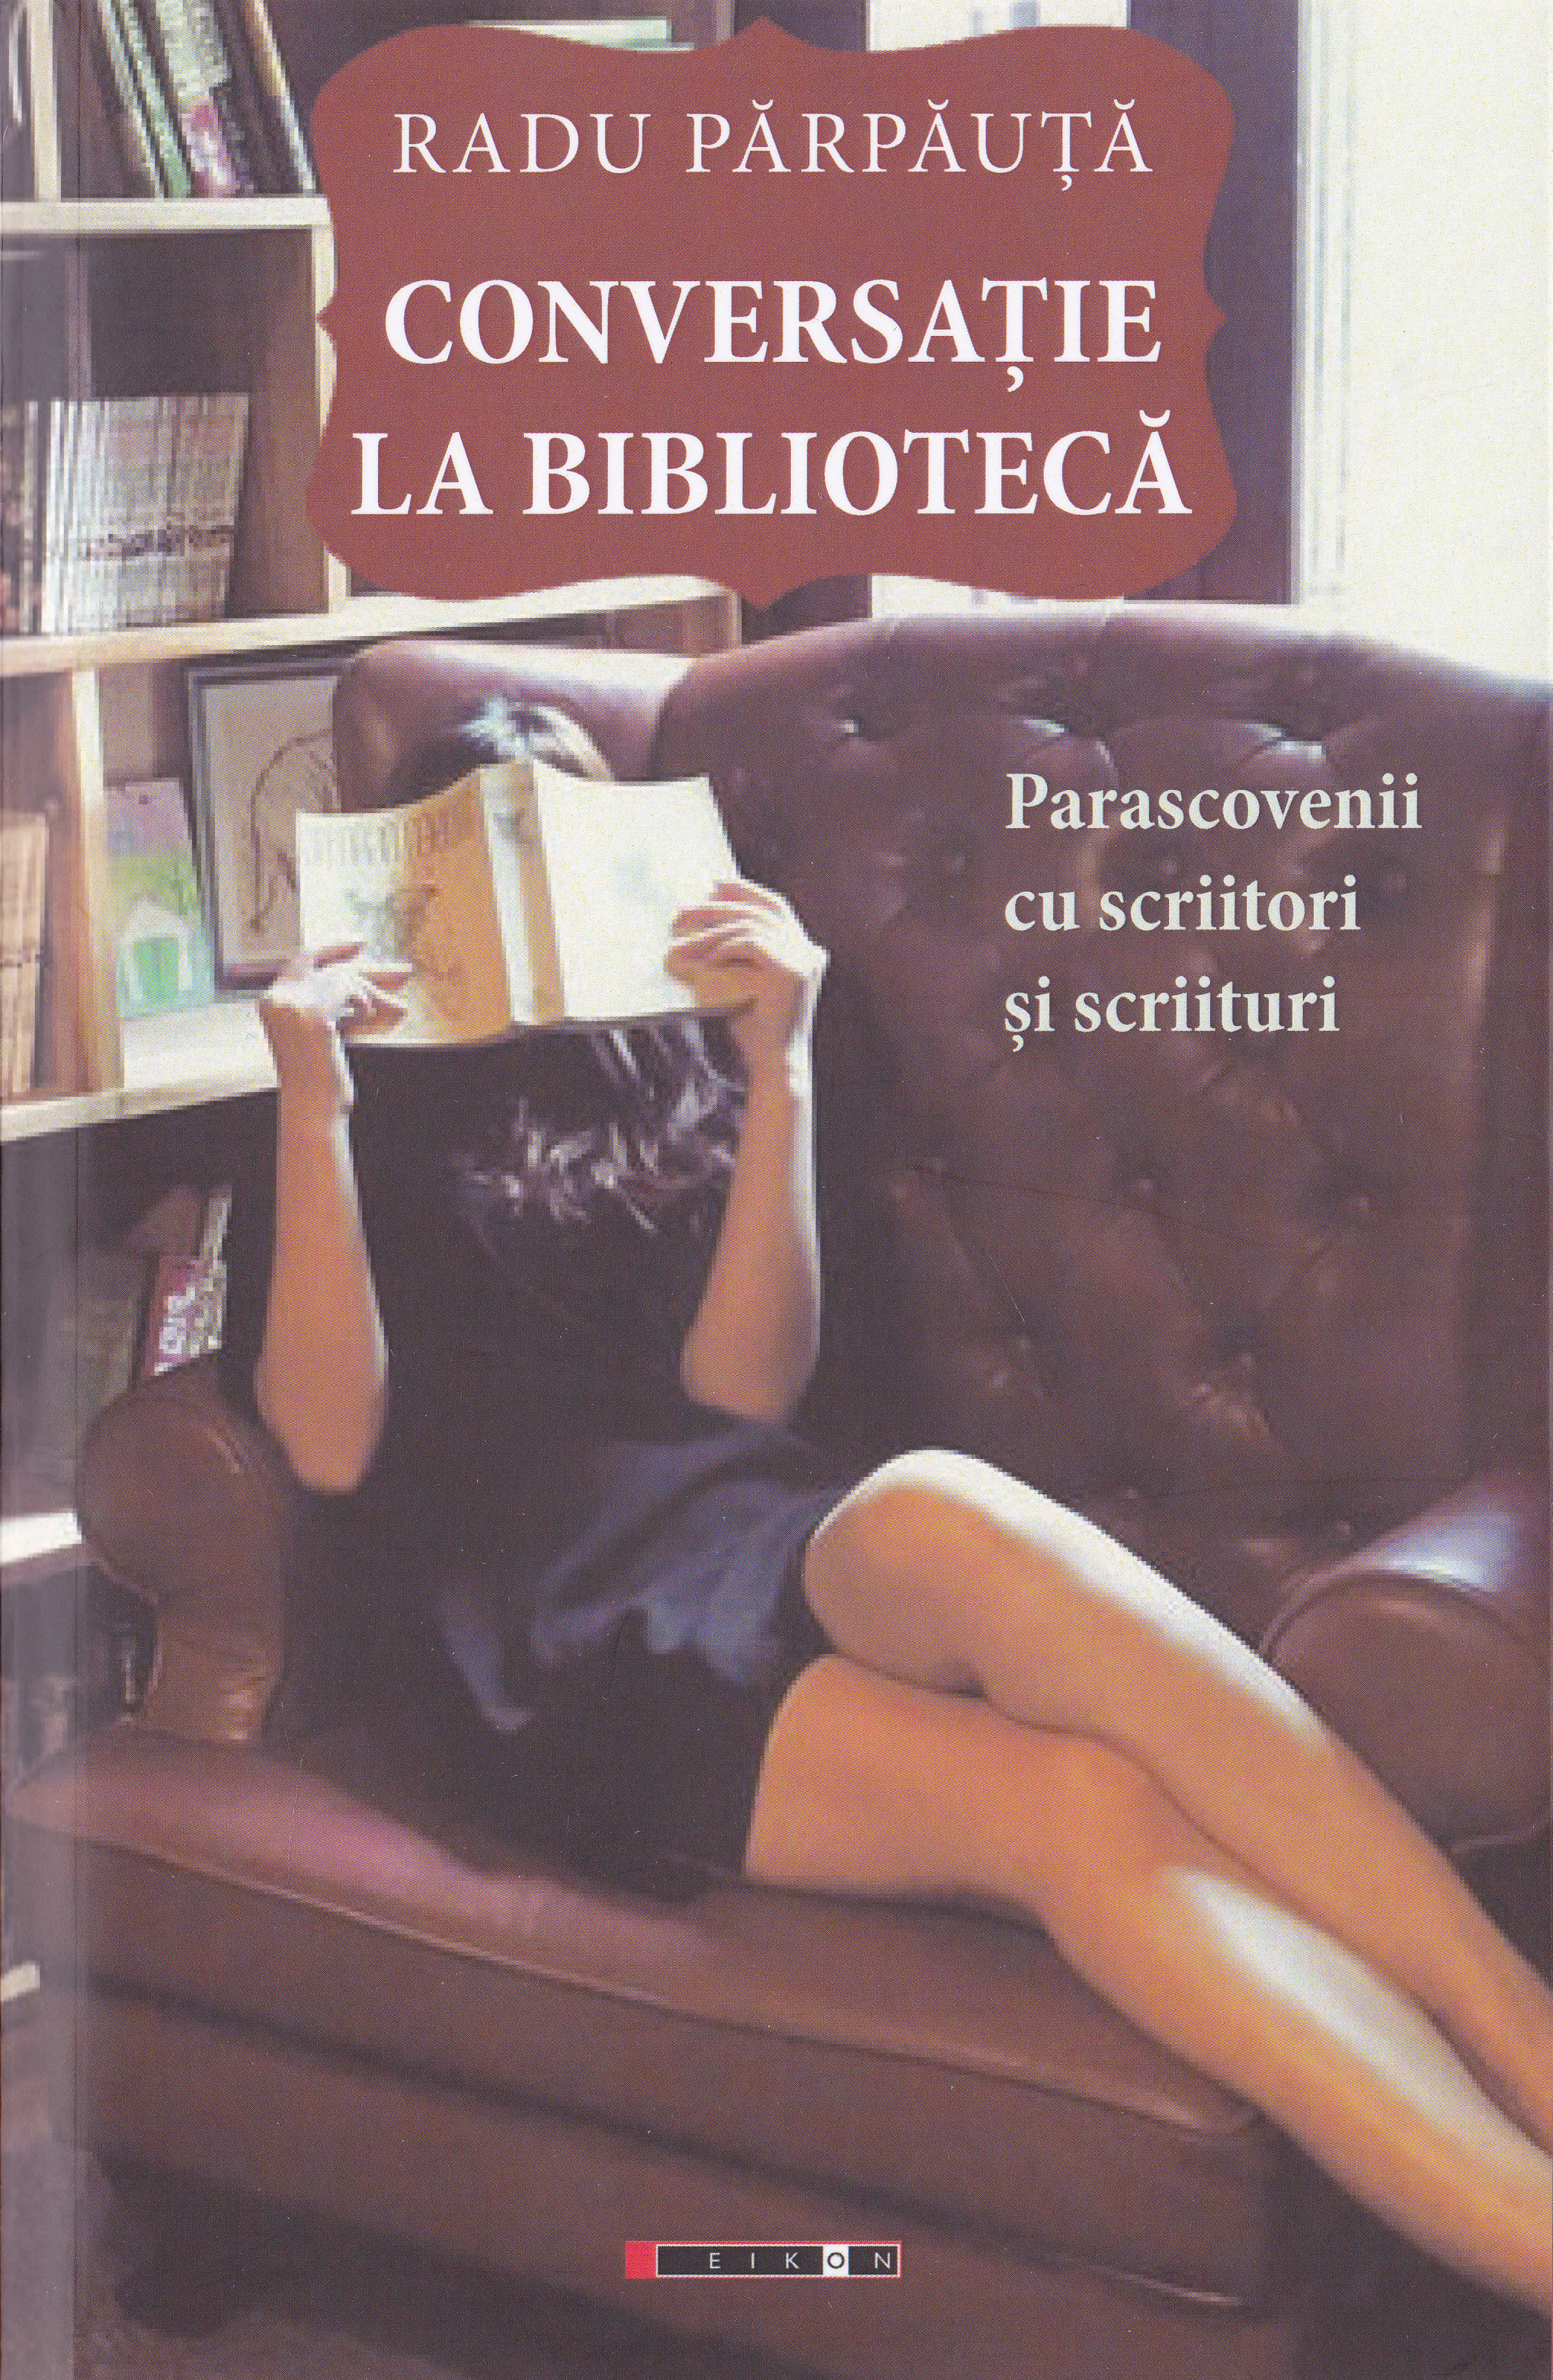 Conversatie la biblioteca - Radu Parpauta